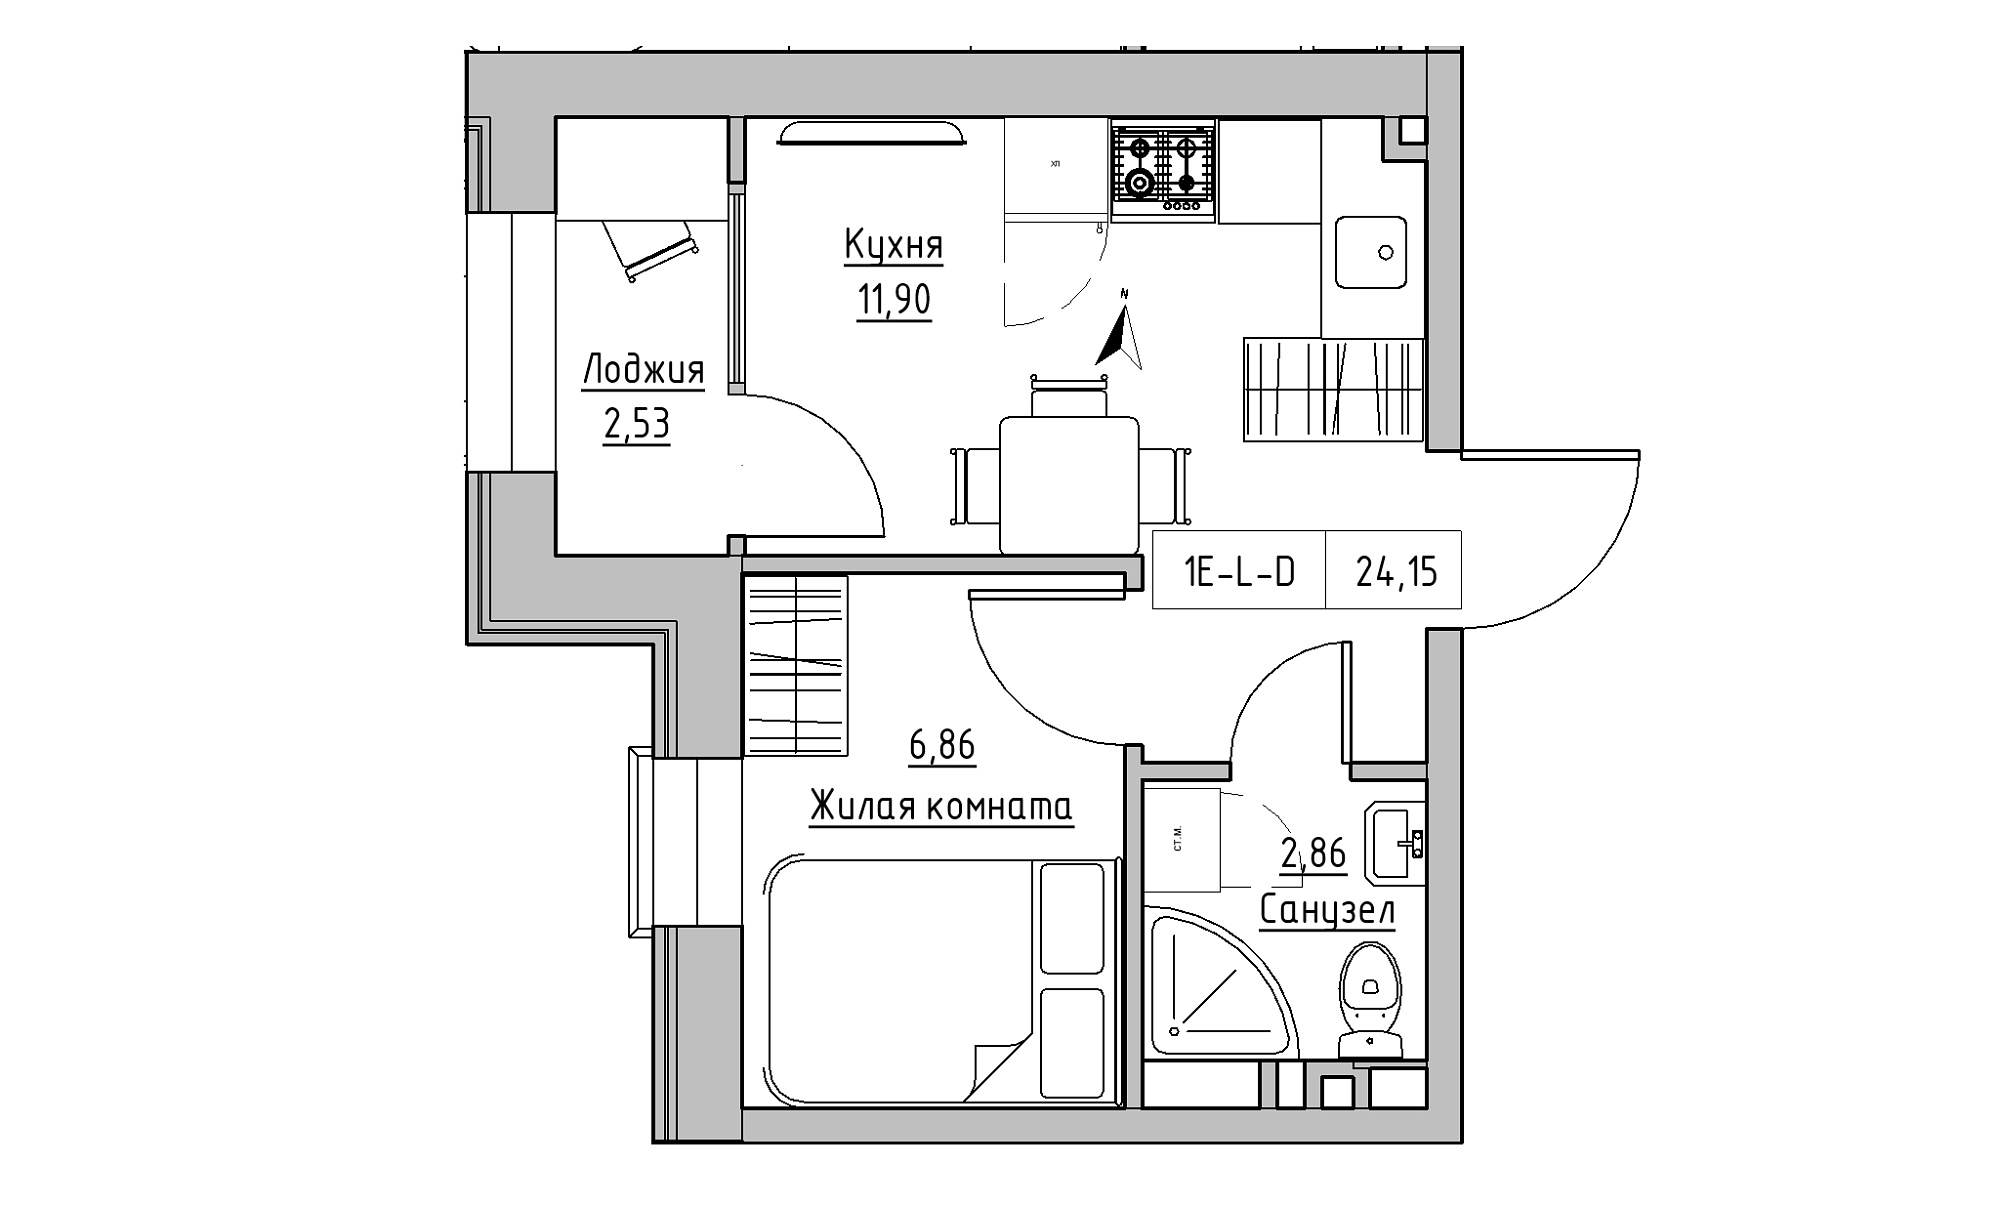 Планування 1-к квартира площею 24.15м2, KS-023-02/0001.